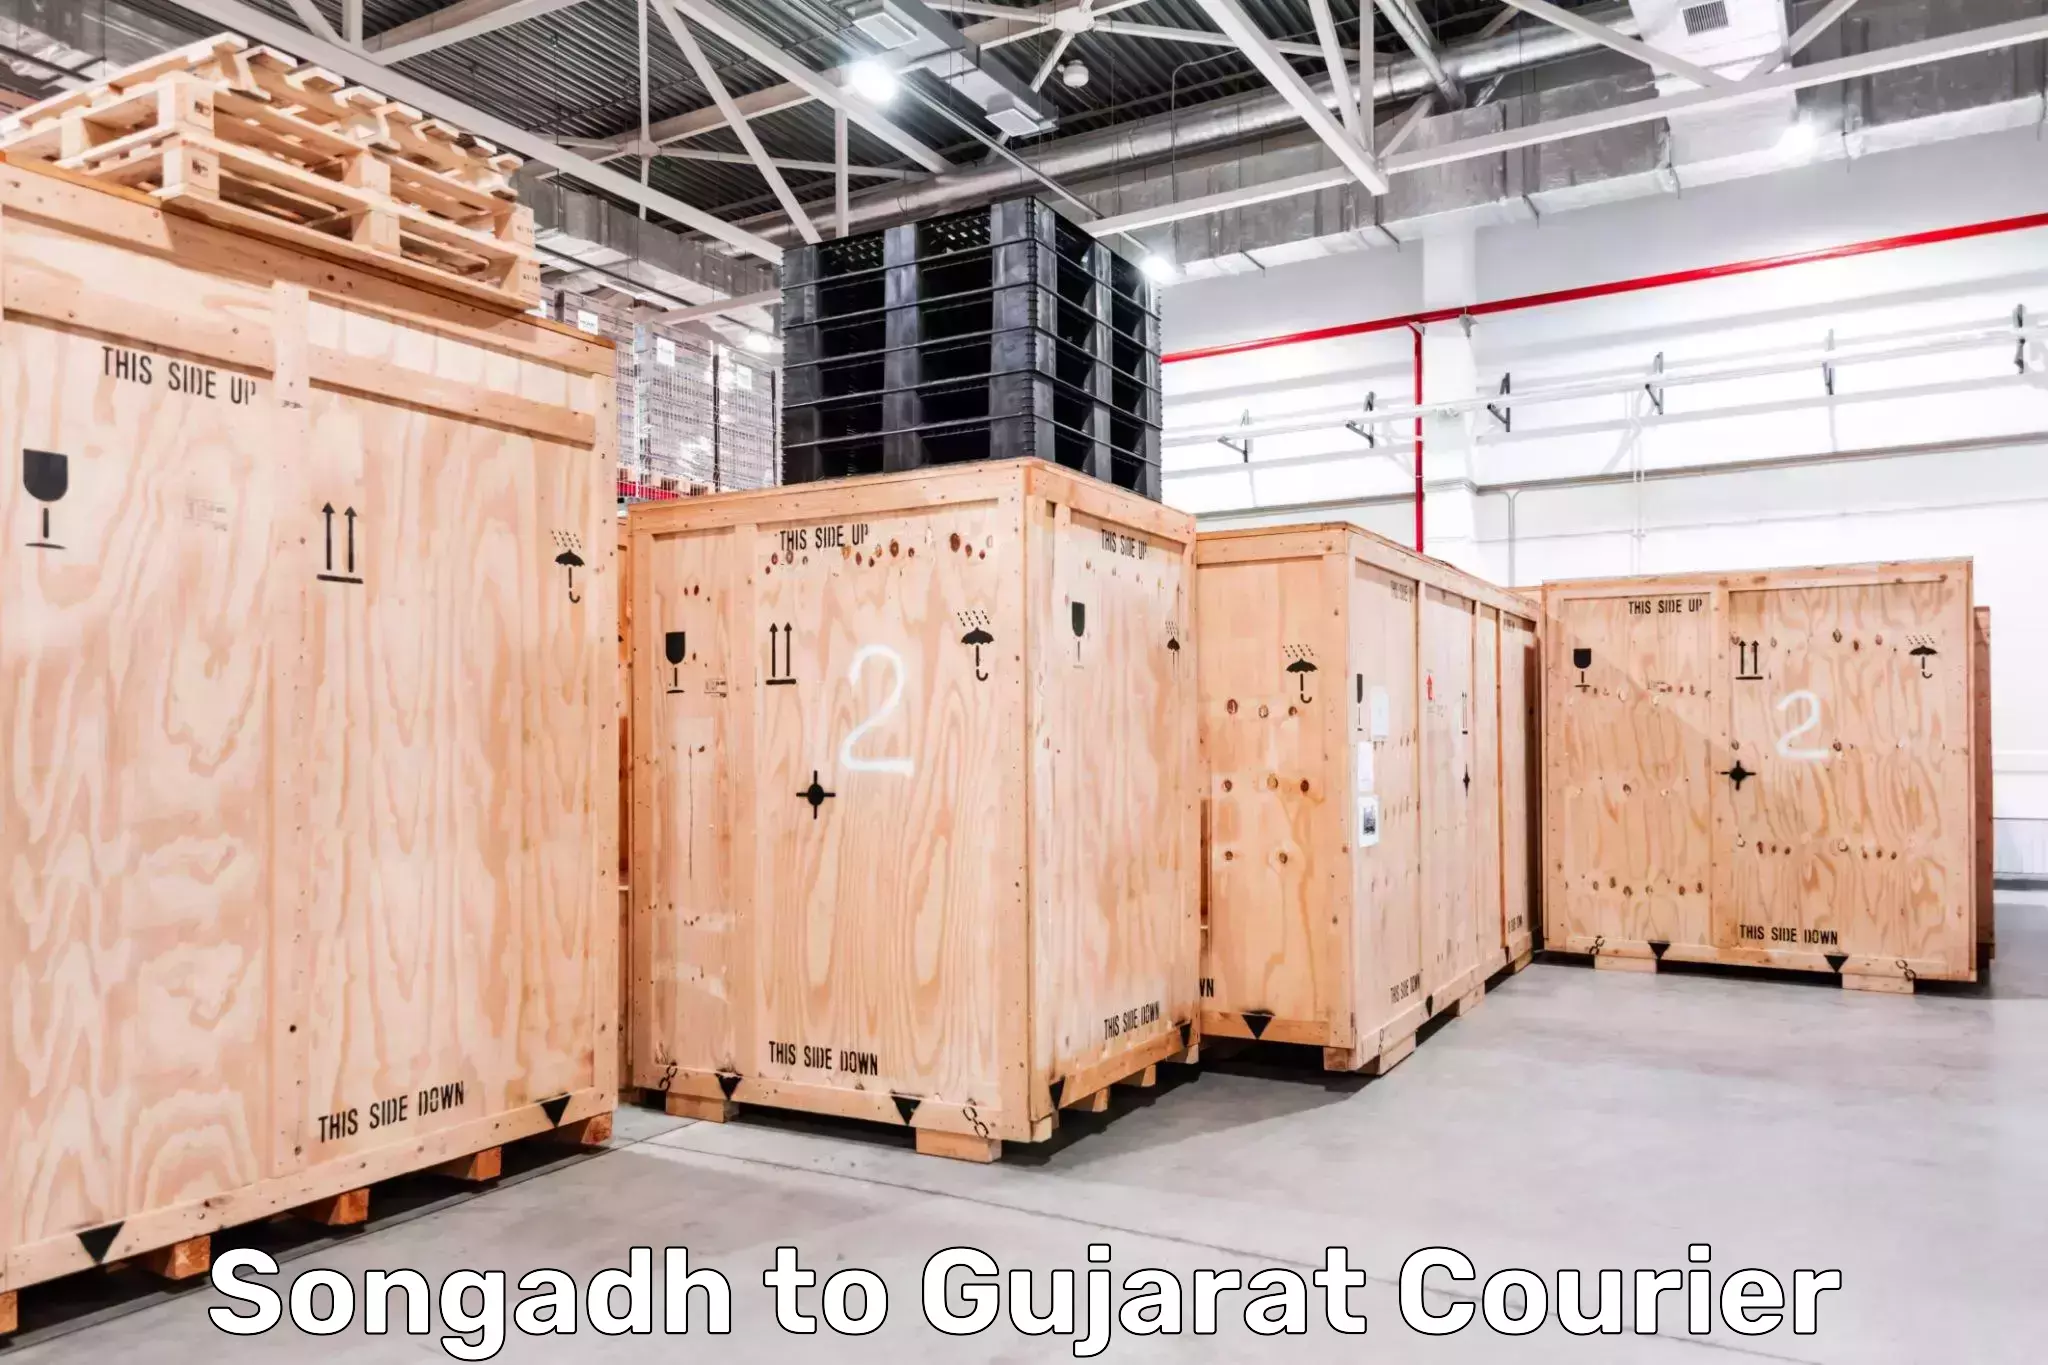 Door-to-door freight service Songadh to Girgadhada